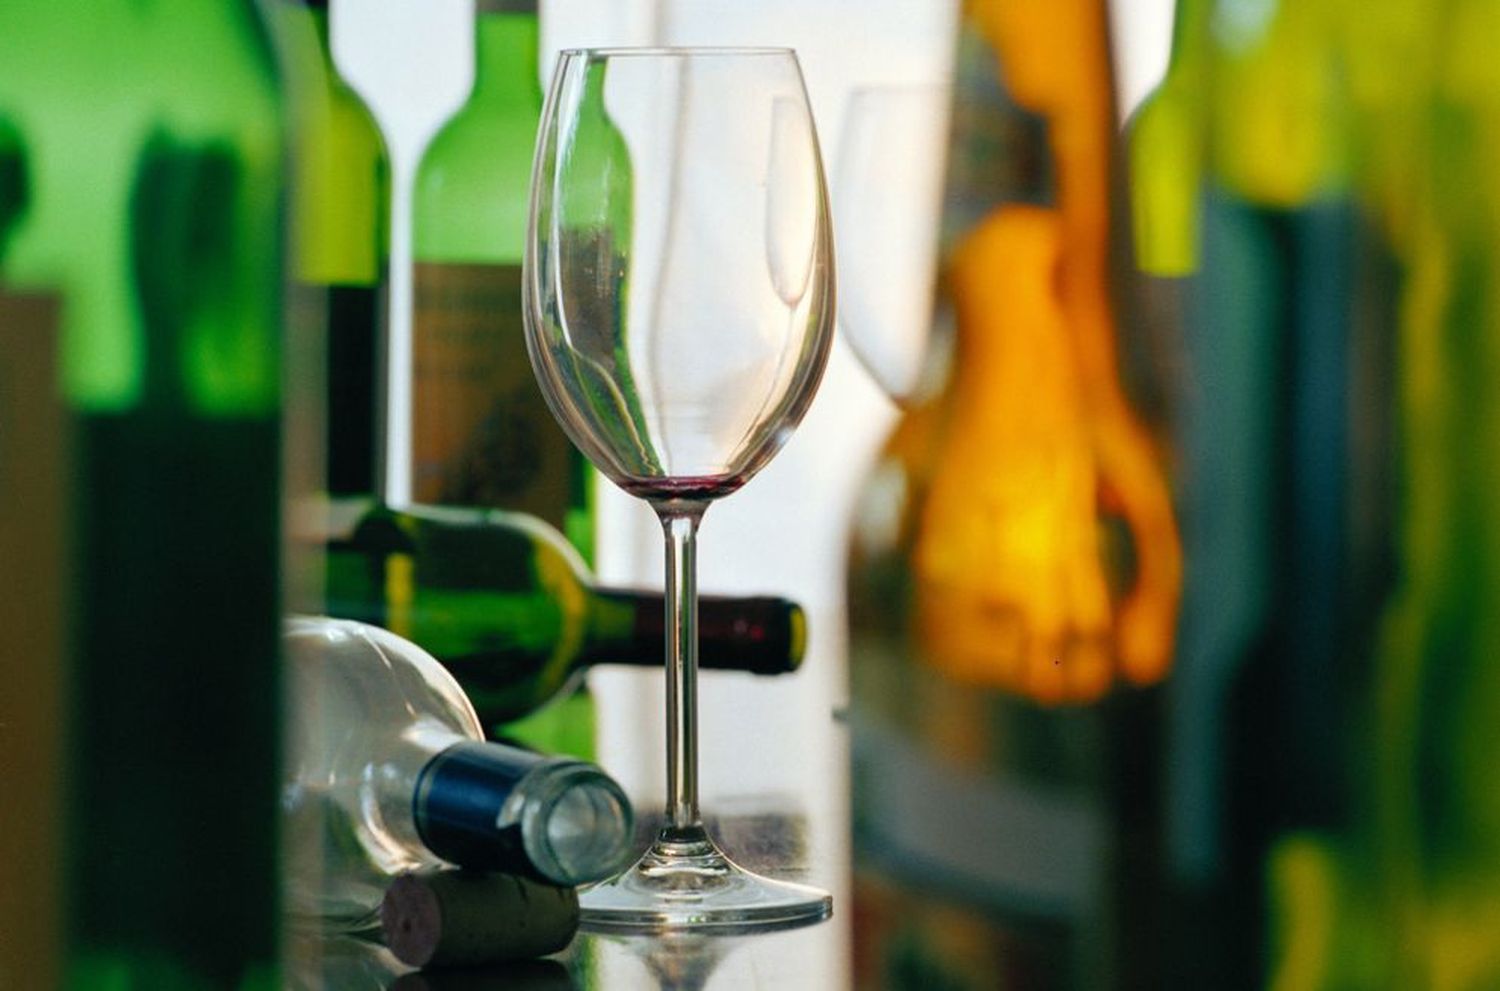 Les personnes de plus de 50 ans sont les plus touchées par une consommation d’alcool chronique à risques.